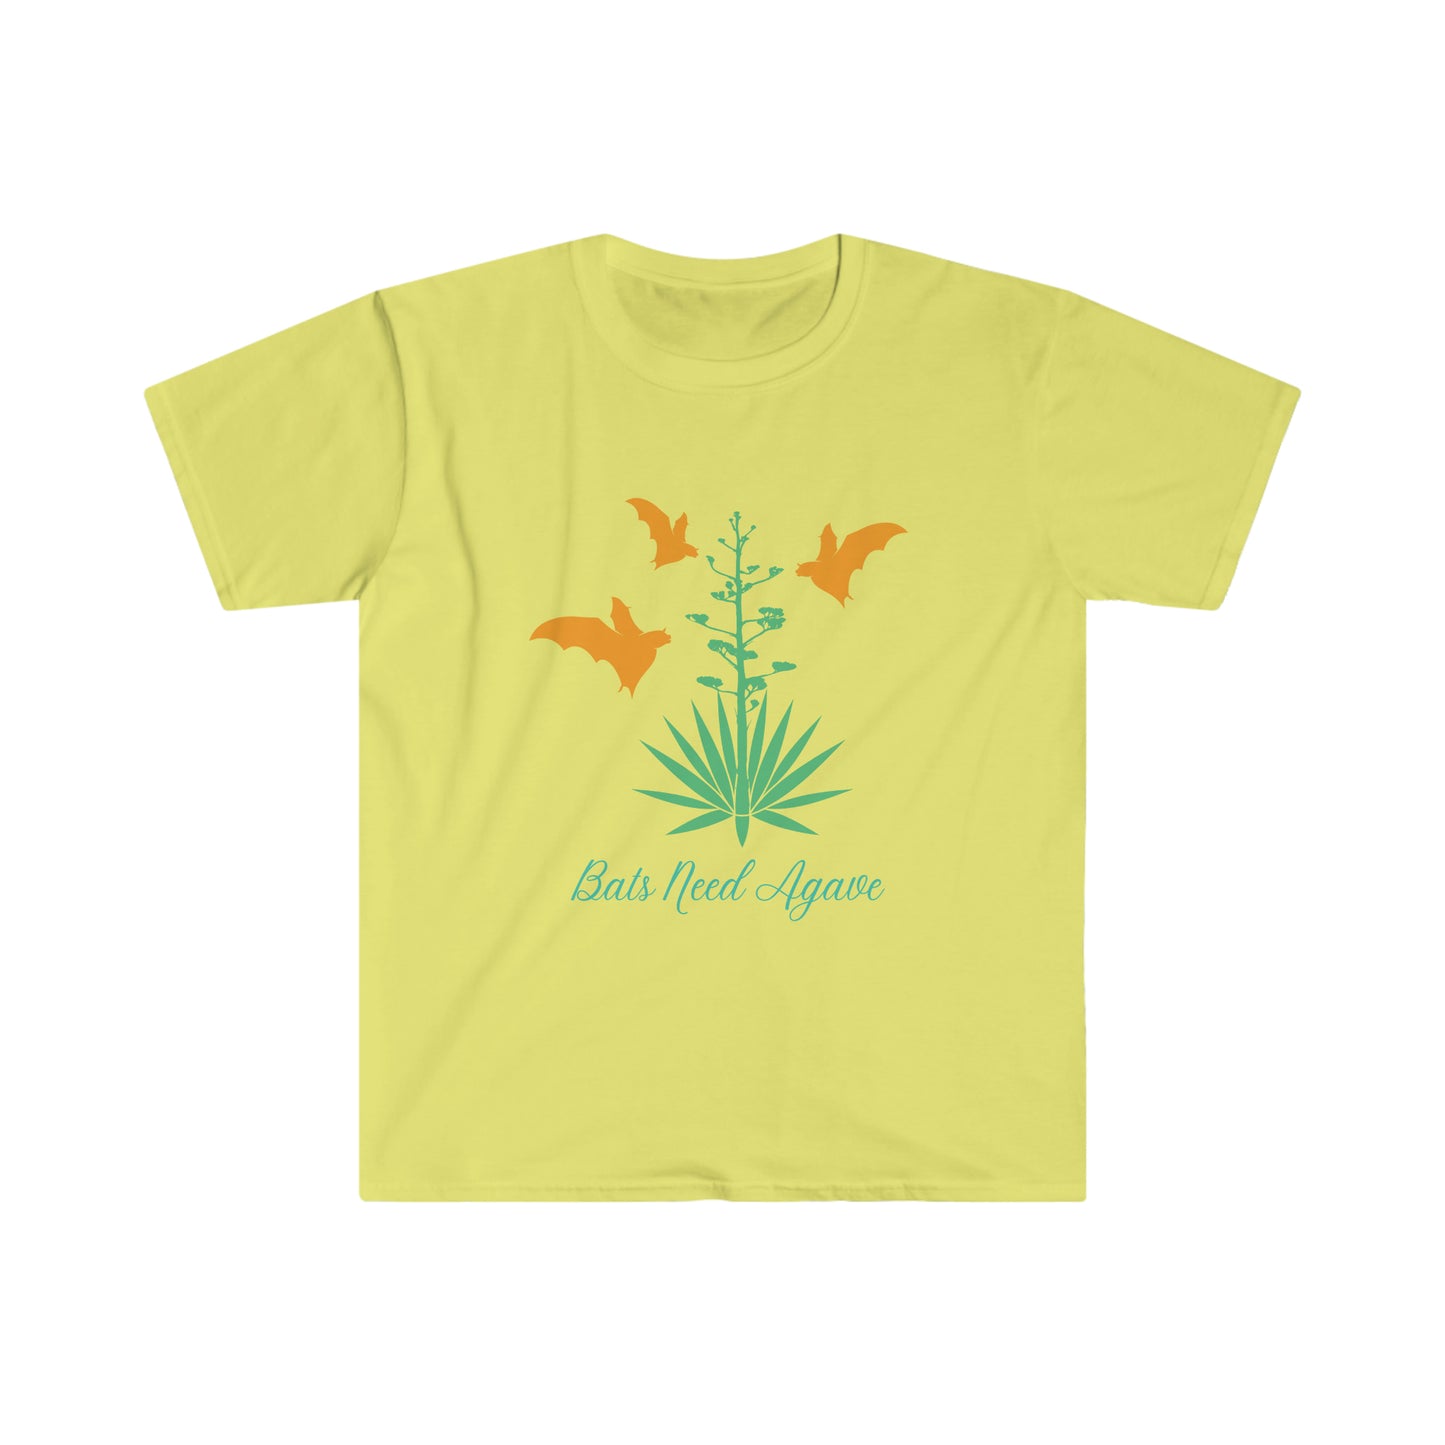 Colorful Silhouettes - Camiseta unisex Softstyle